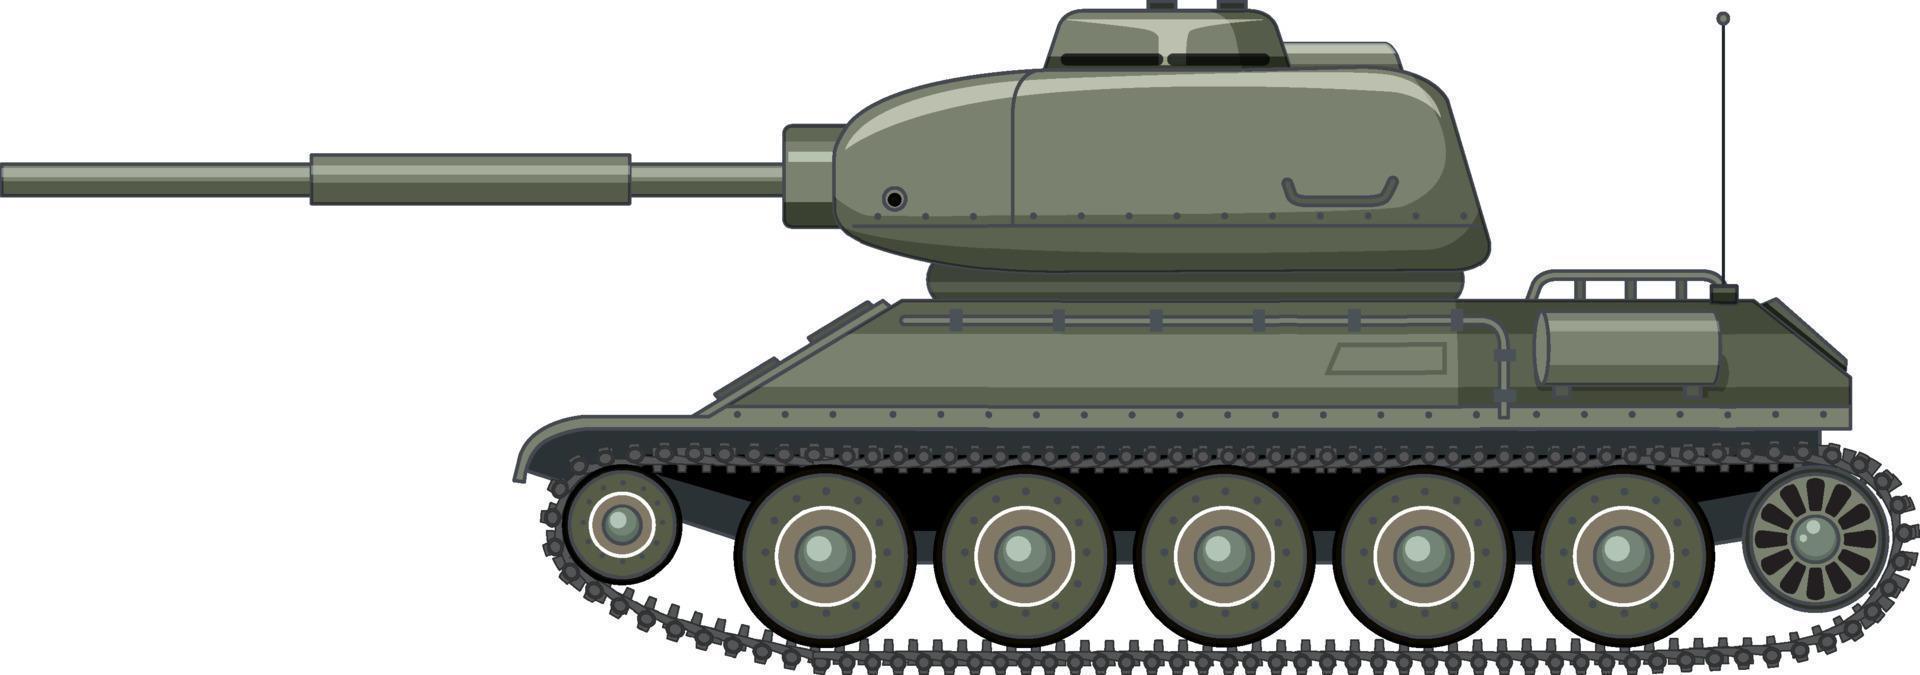 tanque de batalha militar em fundo branco vetor